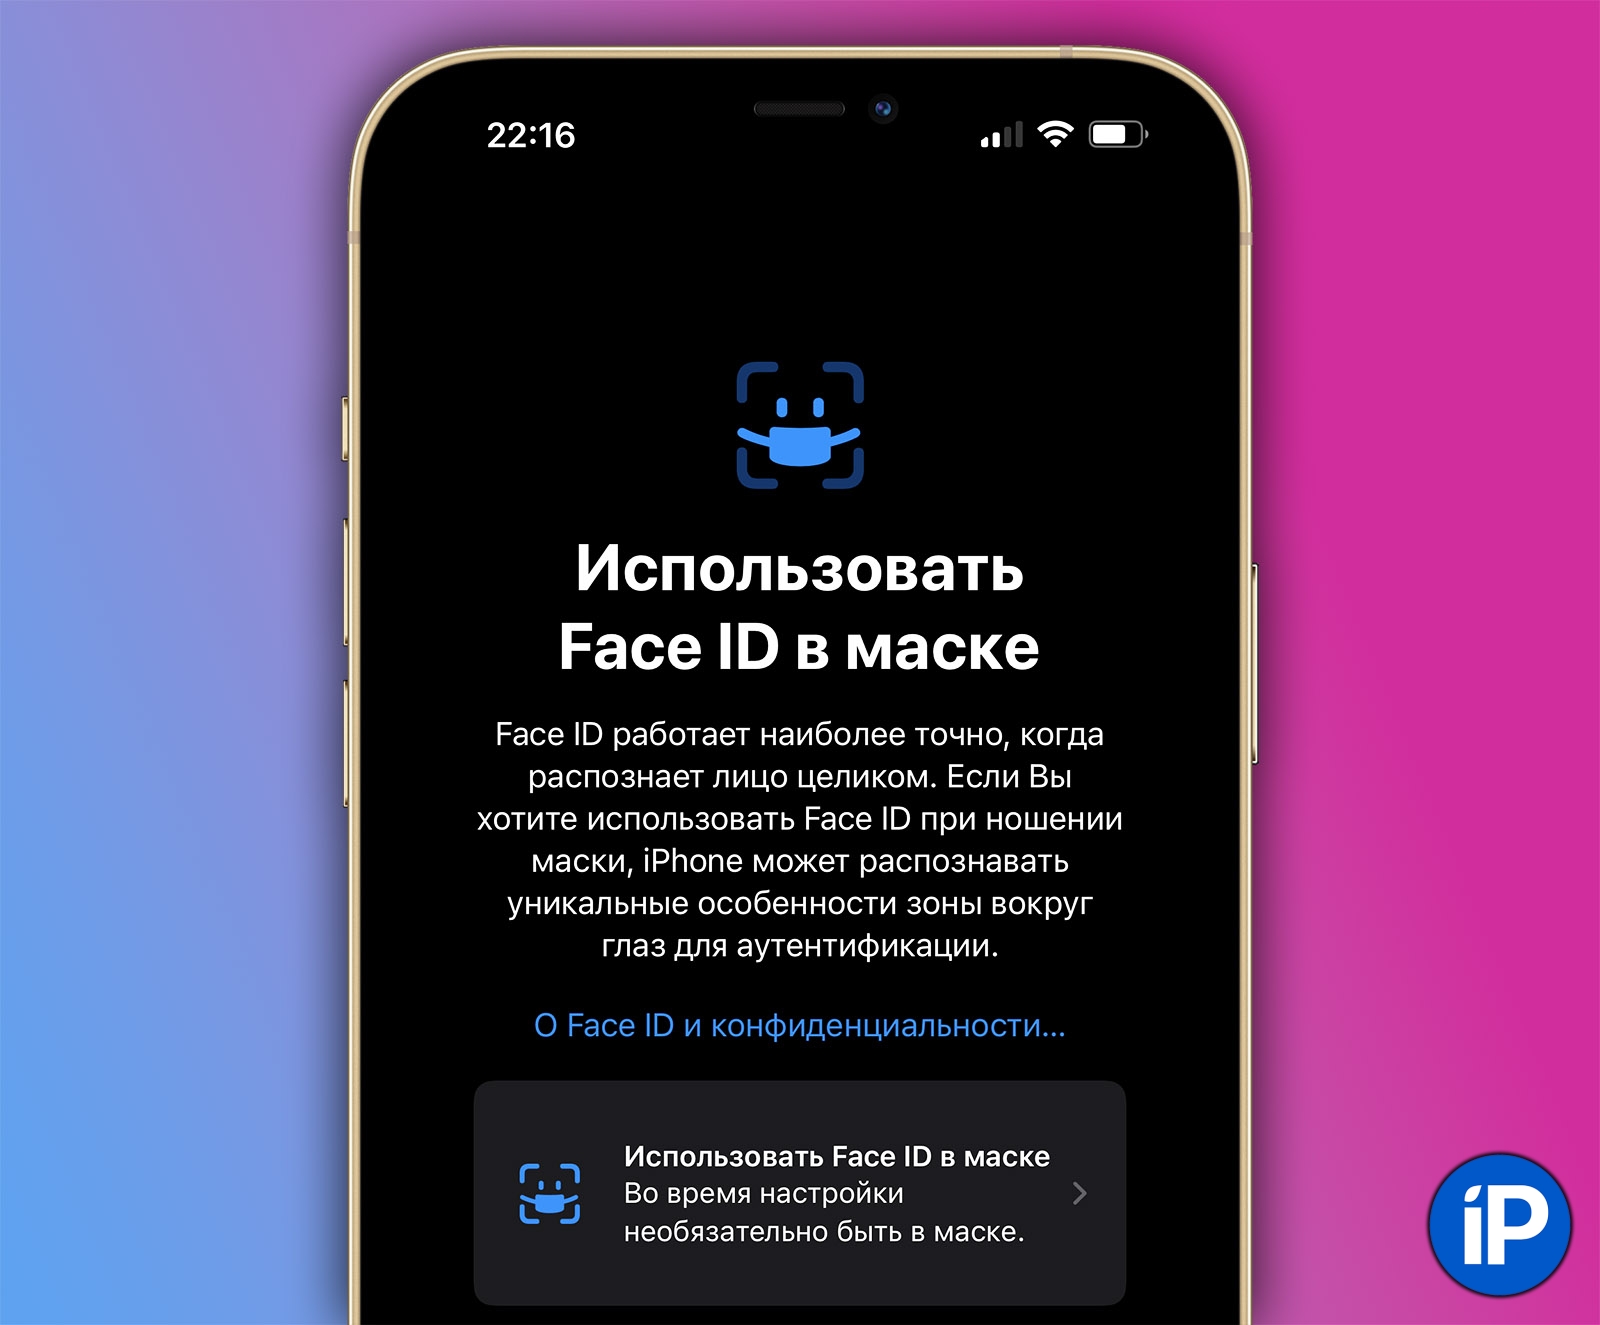 Id face mask 15.4 ios iOS 15.4: